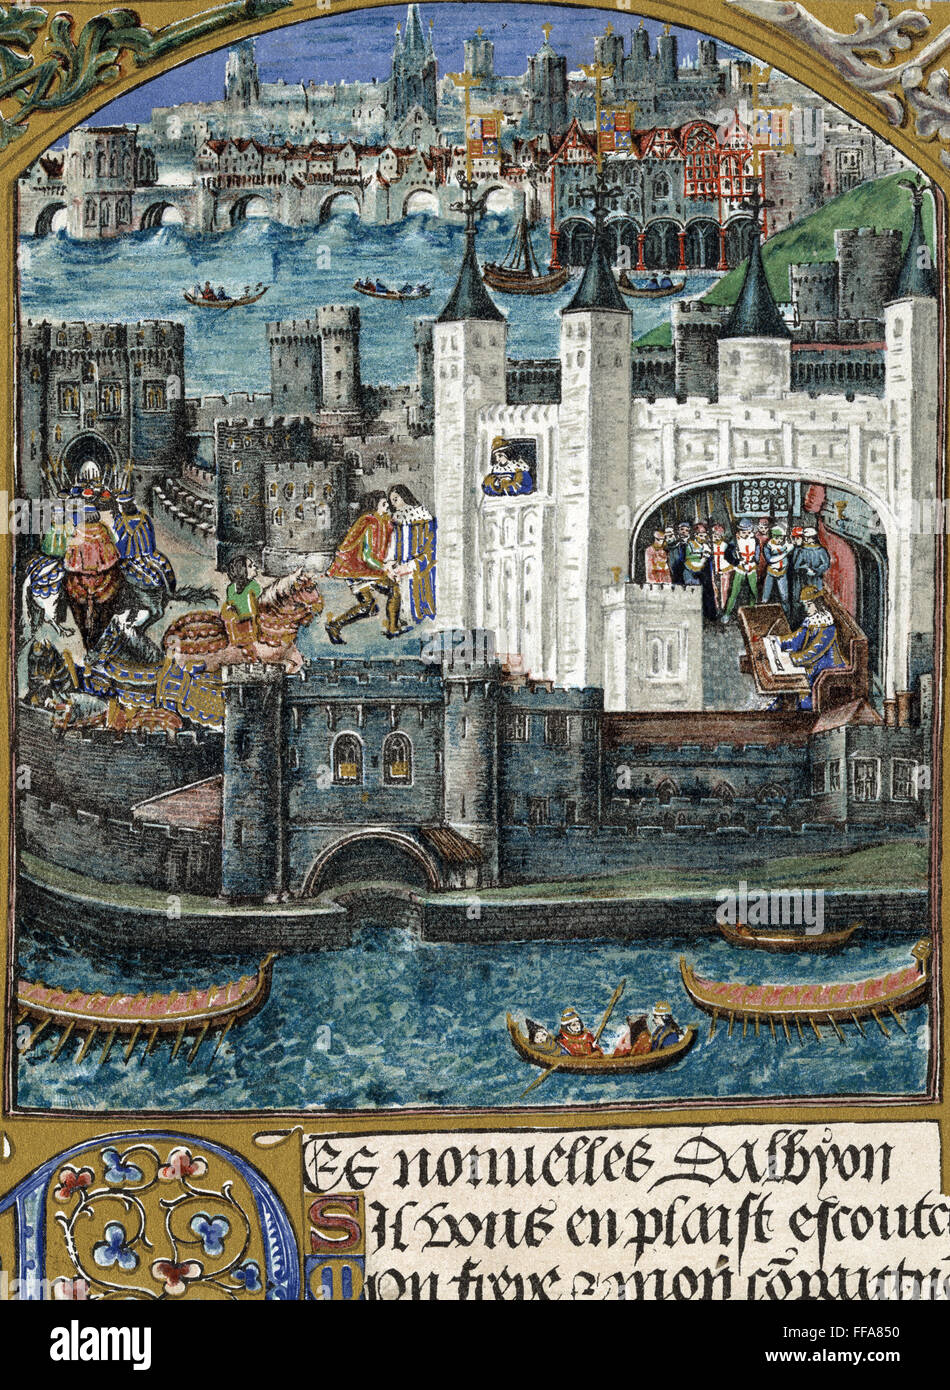 Torre blanca de Londres. /Nen un manuscrito de los poemas de Charles d'Orleans, quien fue capturado en Agincourt en 1415 y permaneció preso en Inglaterra hasta 1440. Foto de stock